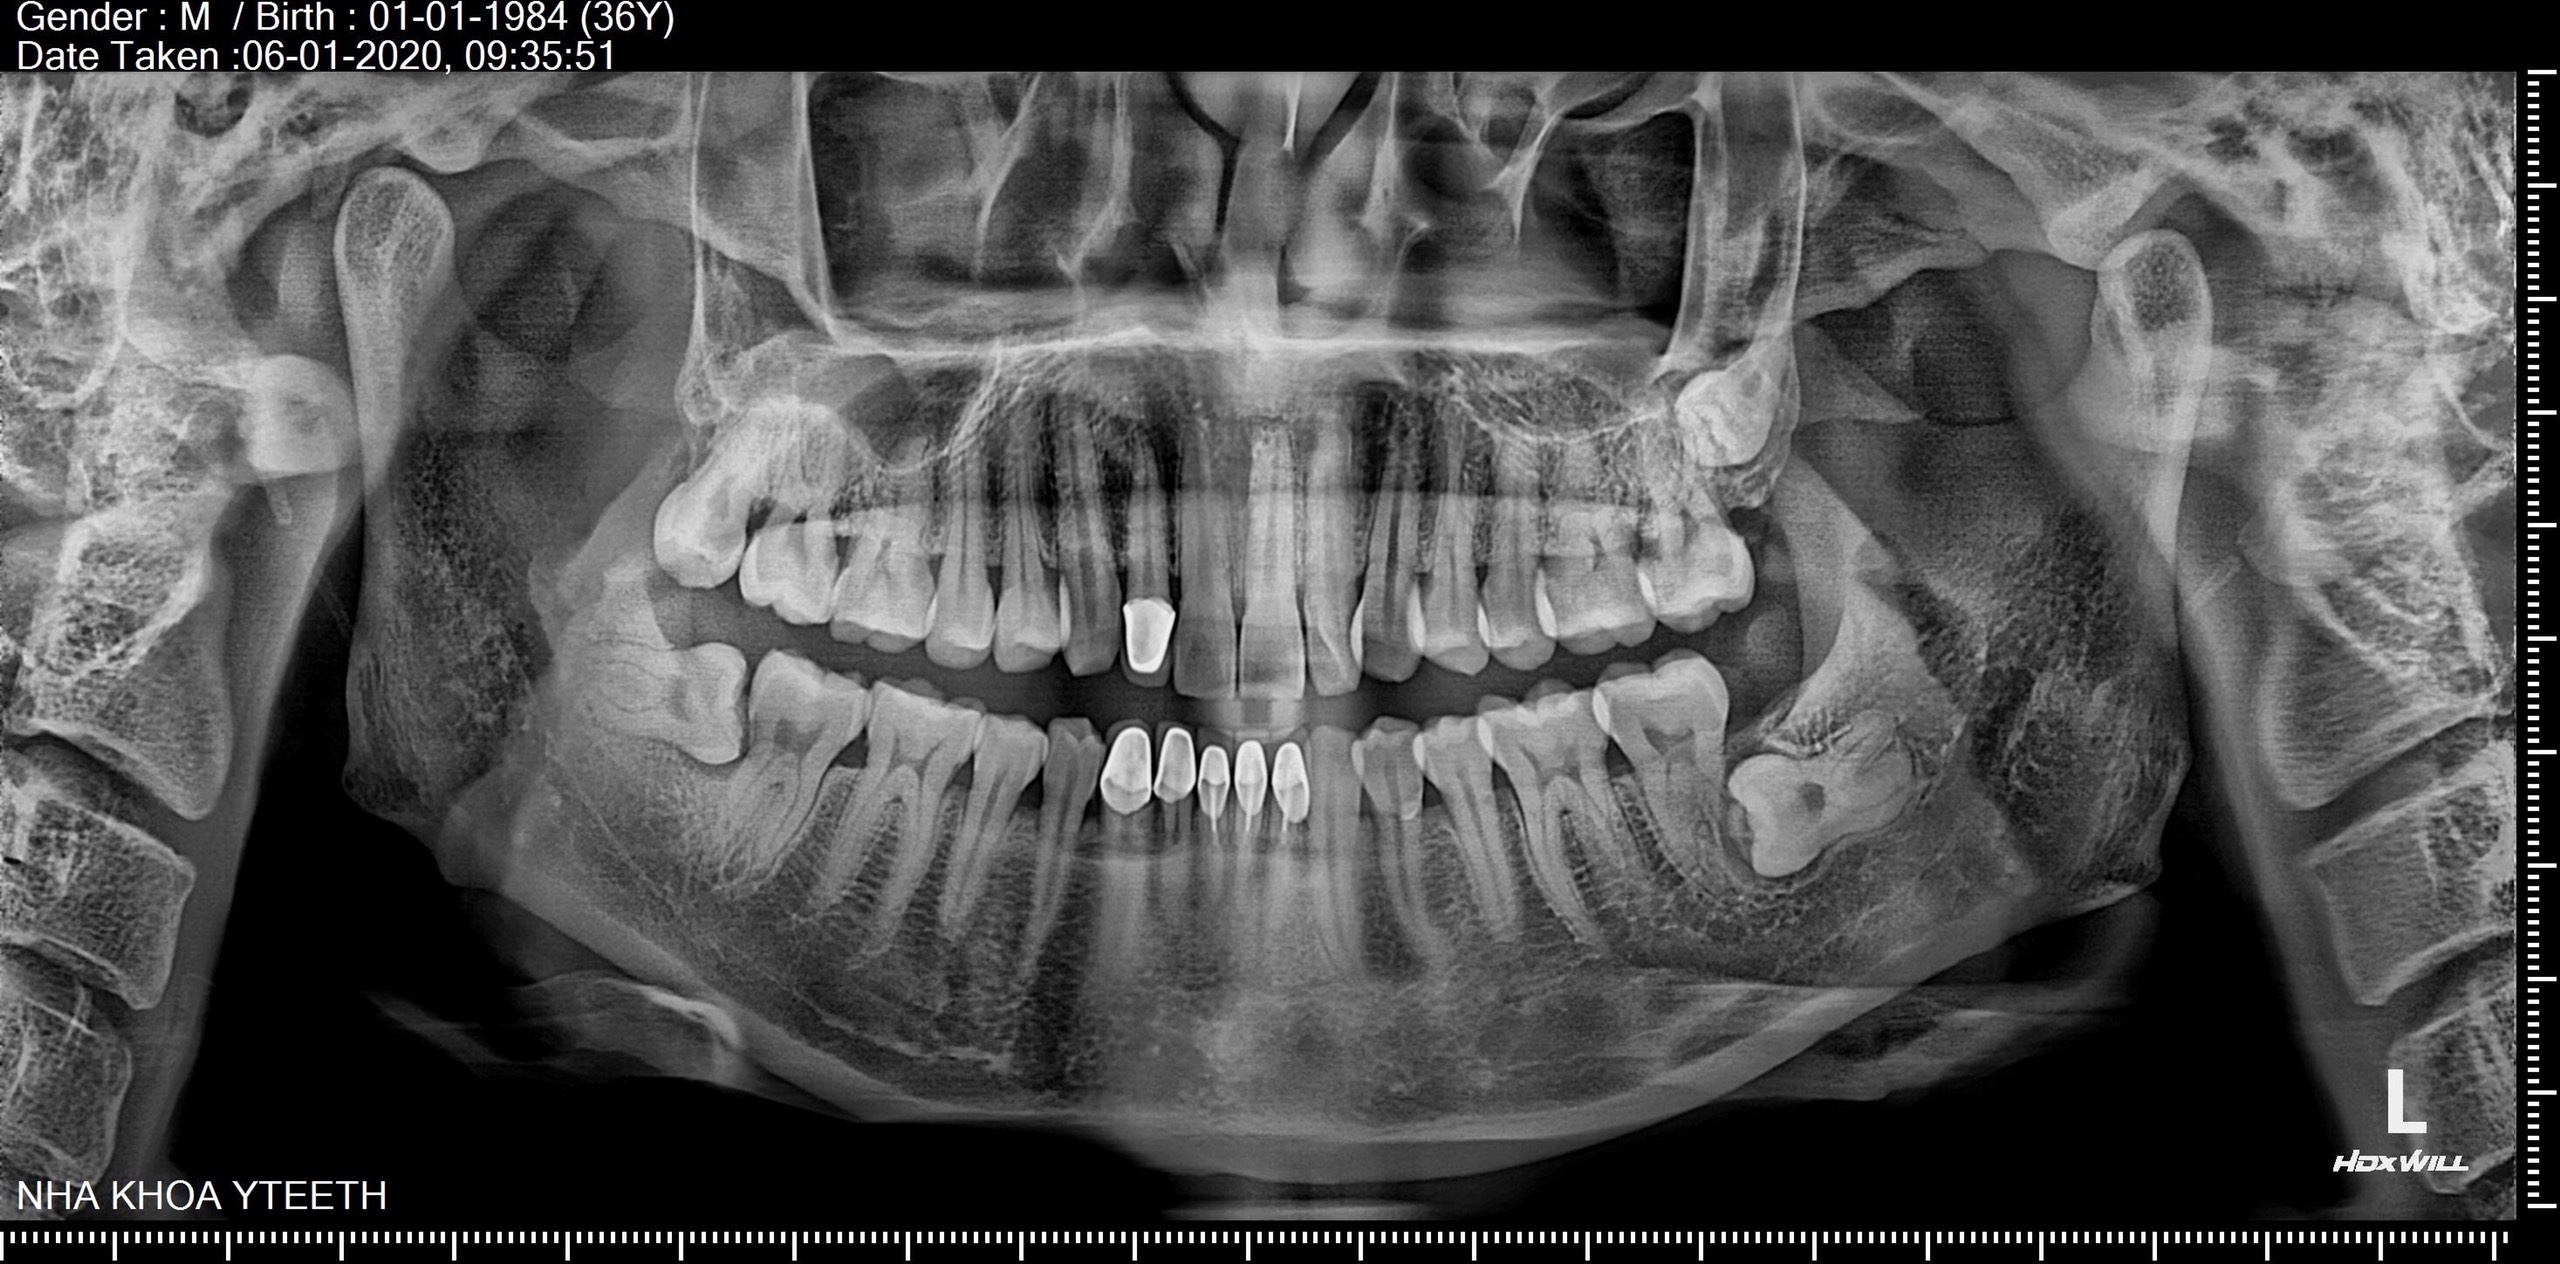 Nhổ răng số 8 tại nha khoa Yteeth